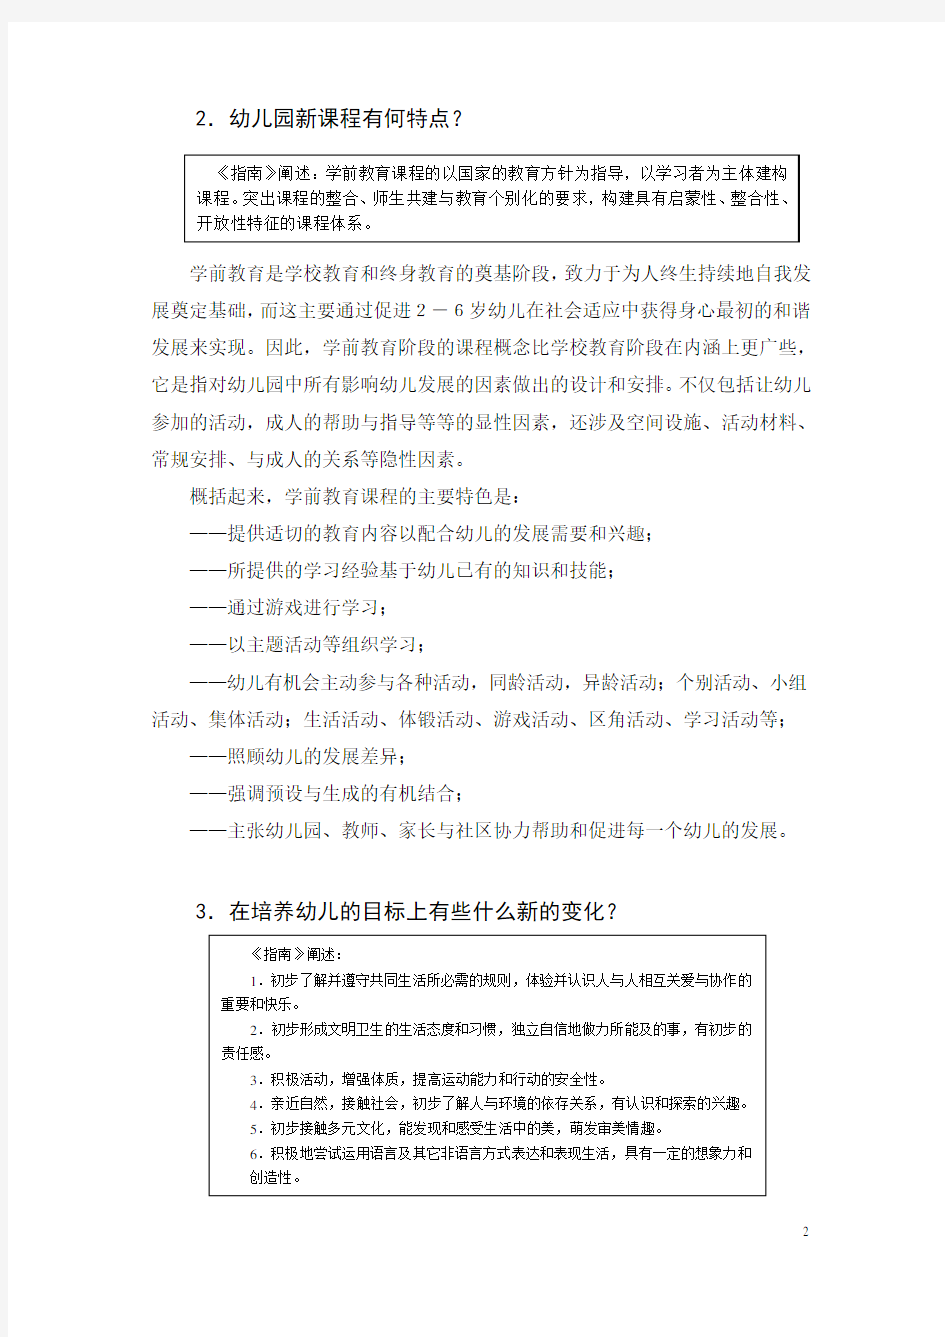 幼儿园课程教材改革的要点-上海教委